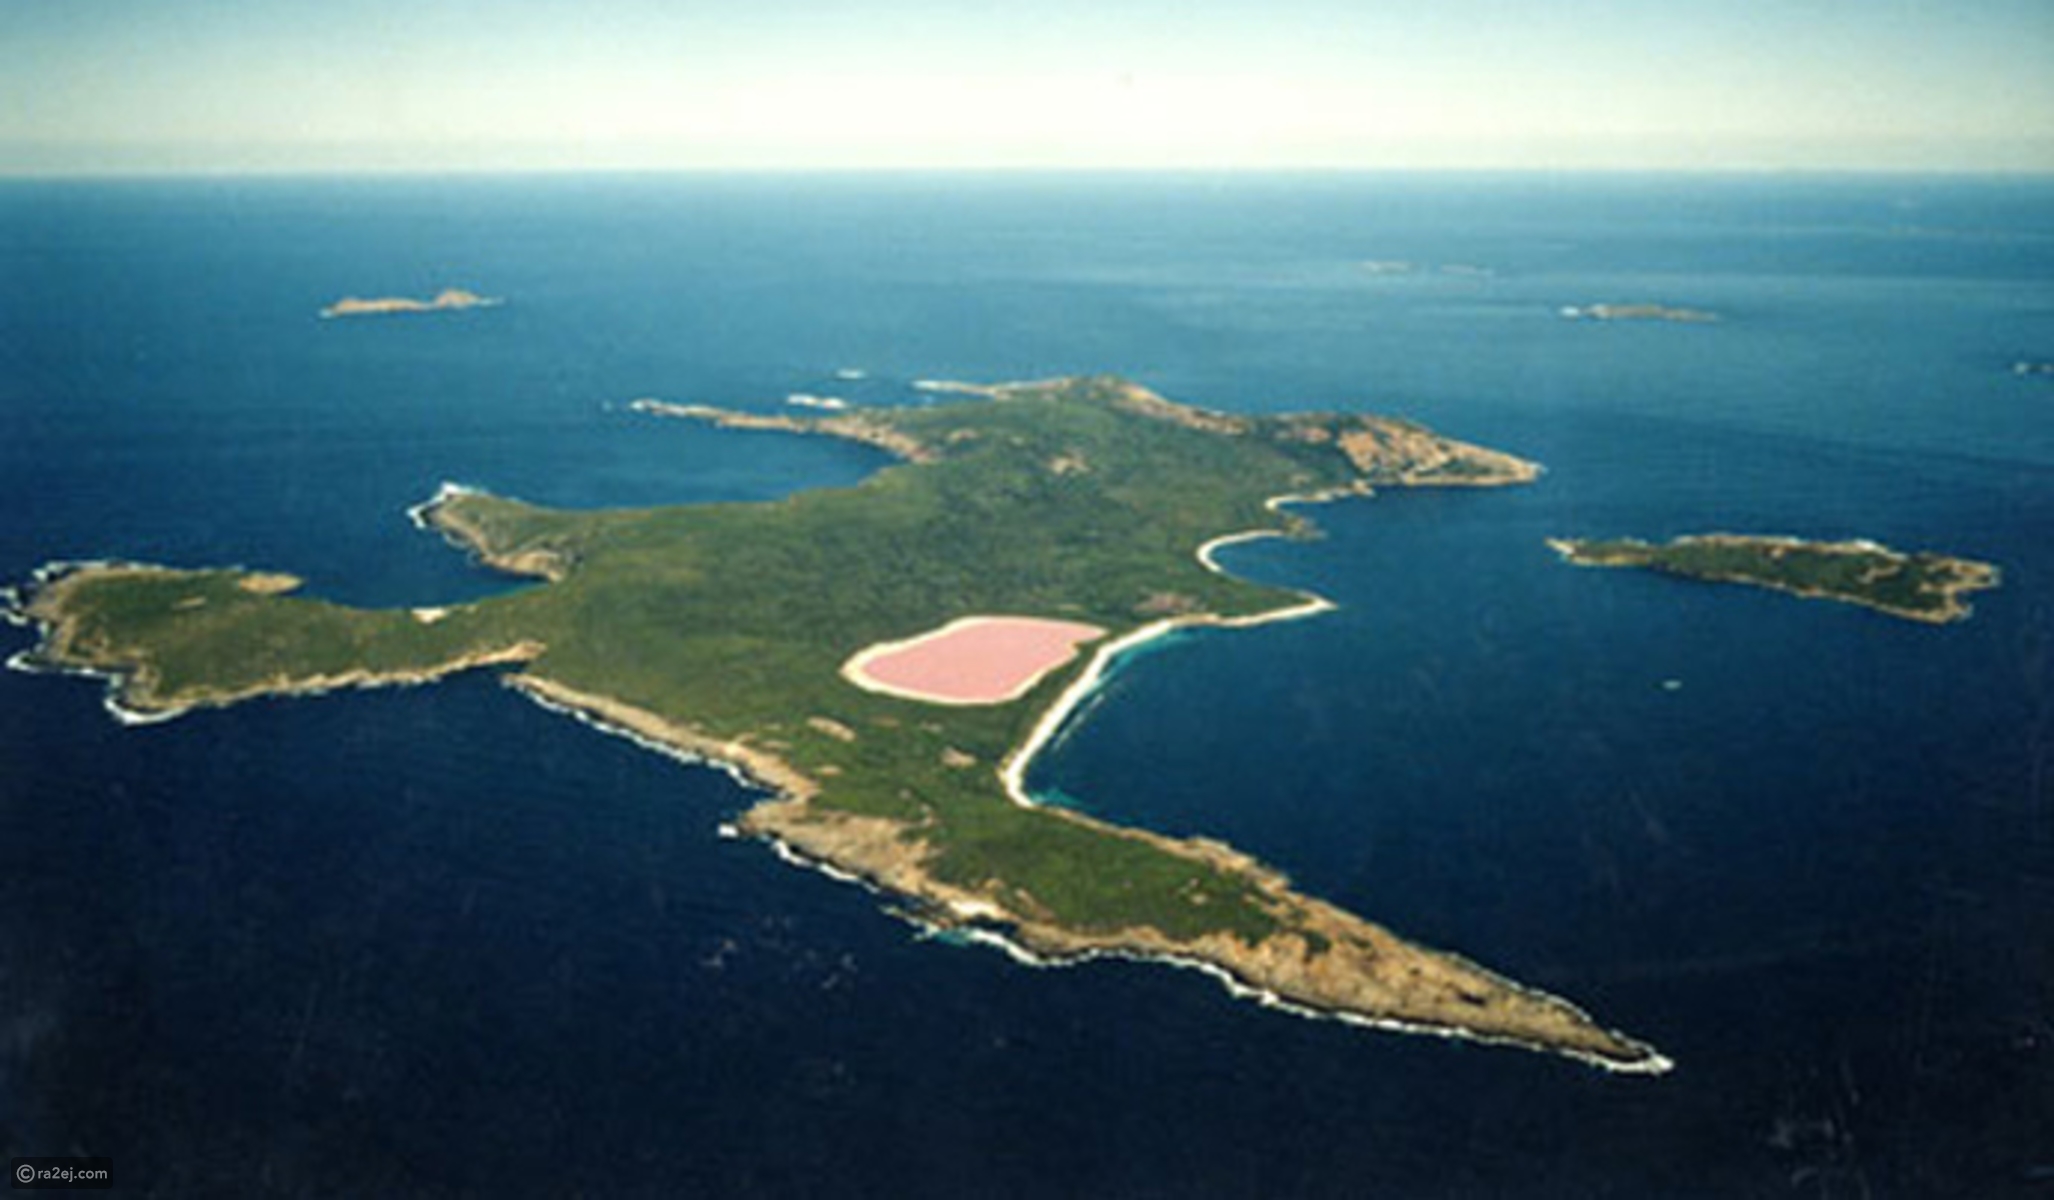 بحيرة هيلير أو البحيرة الوردية في غرب أستراليا 9d17ccbf037d8cb2a21f9fdb6855d87ed307d545-041016125312.jpg?preset=v3